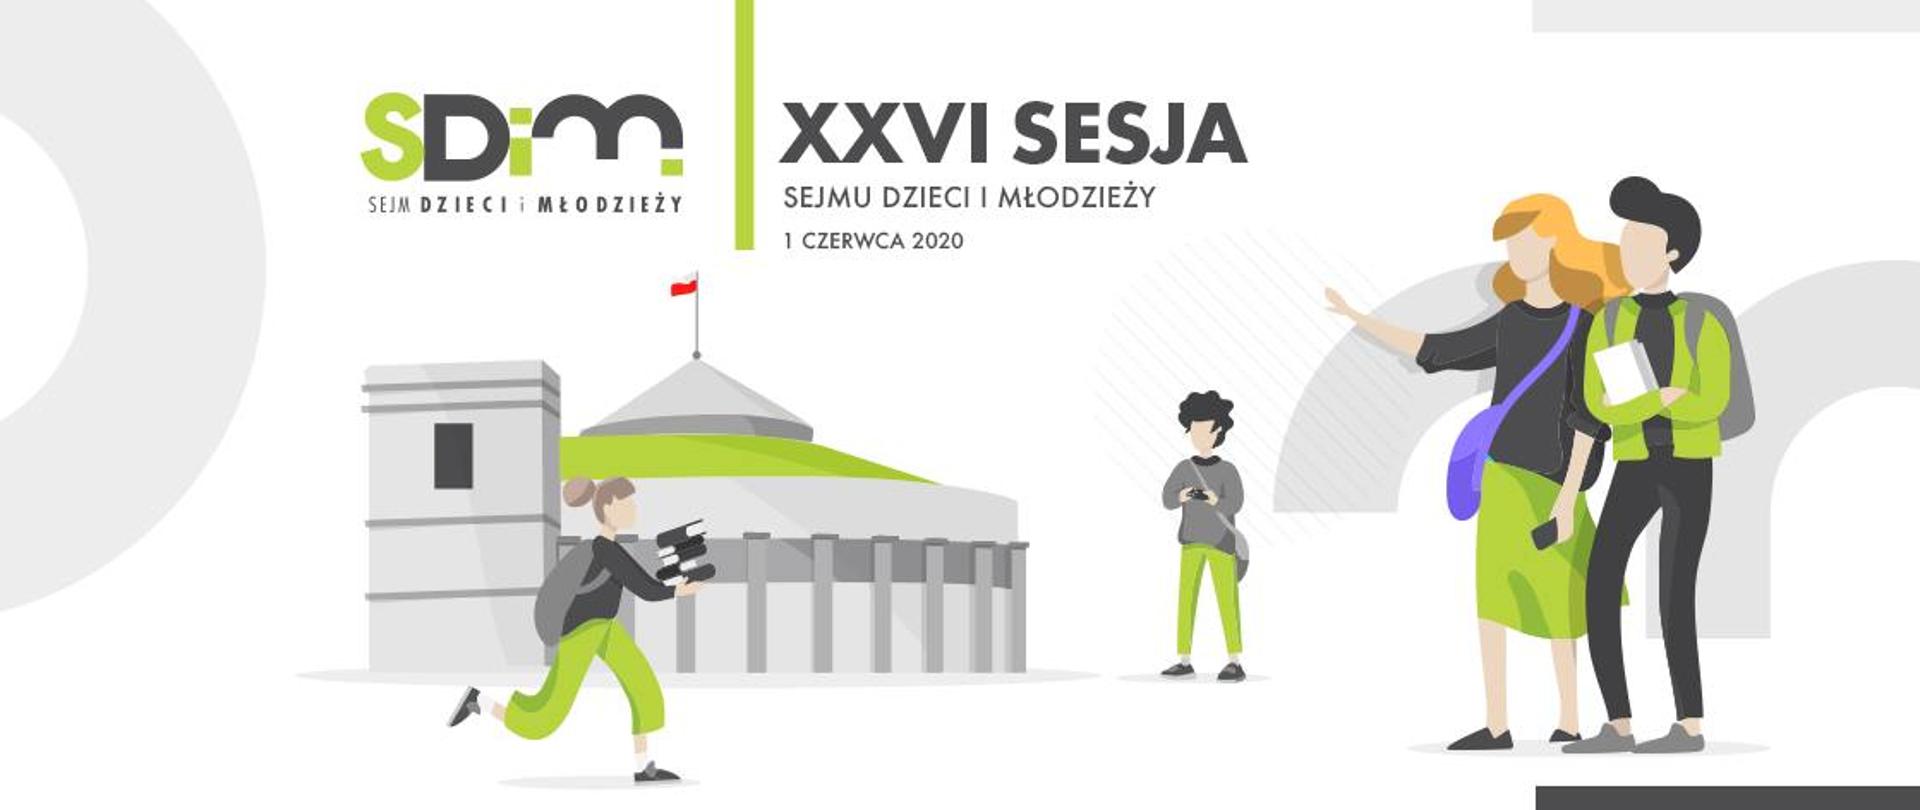 Grafika przedstawiająca budynek Sejmu. Na gorze napis SDIM XXVI sesja Sejmu Dzieci i Młodzieży 